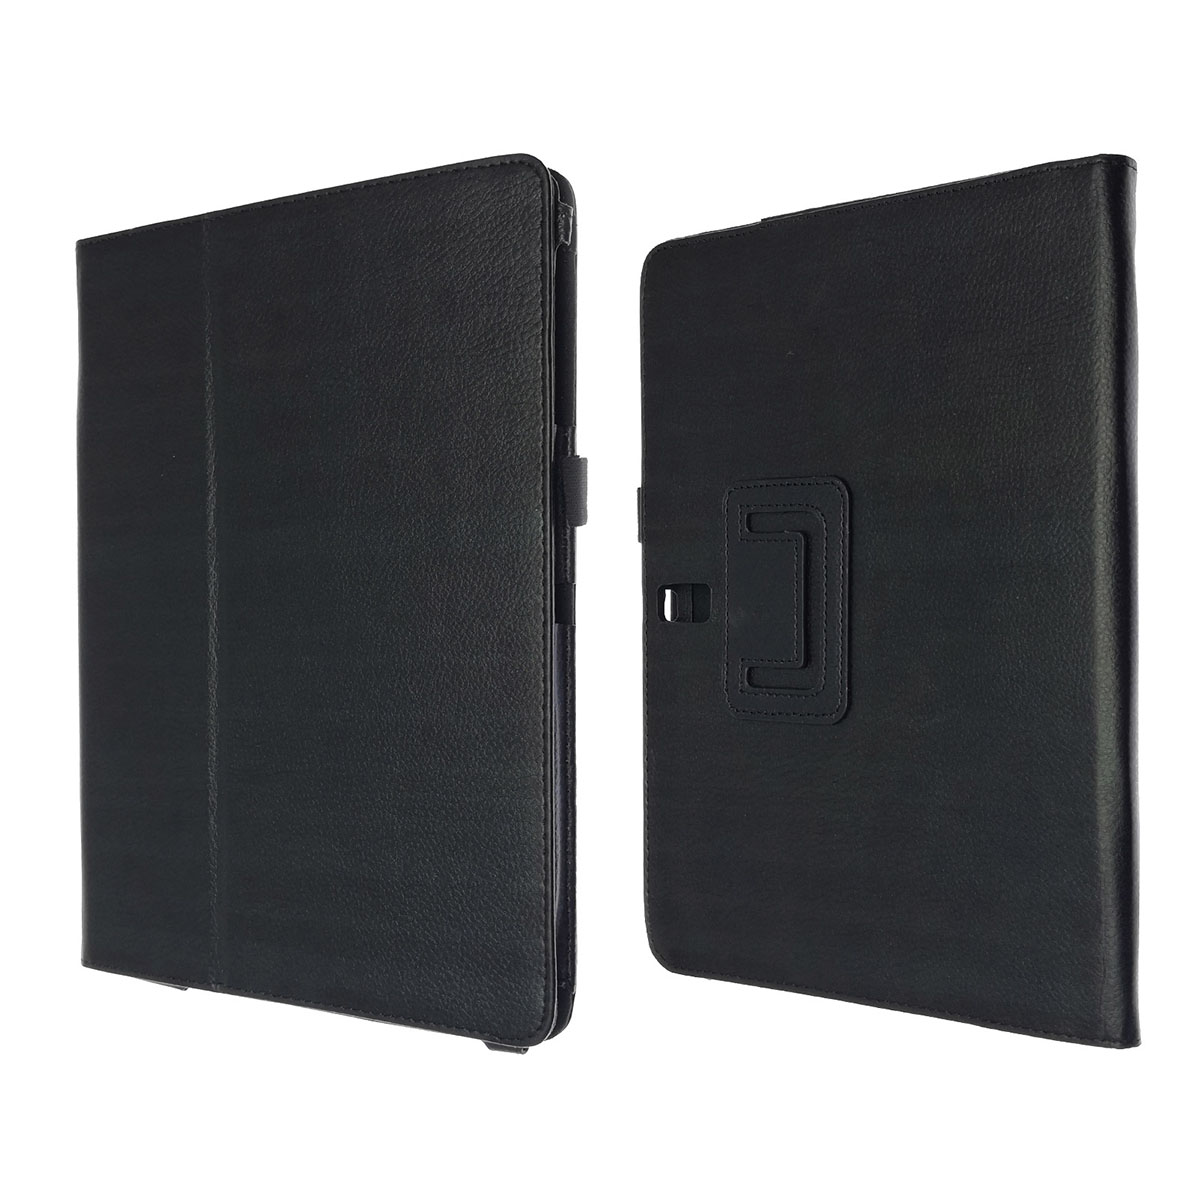 Чехол книжка для SAMSUNG Galaxy Tab S 10.5 (SM-T800, SM-T805), экокожа, цвет черный.